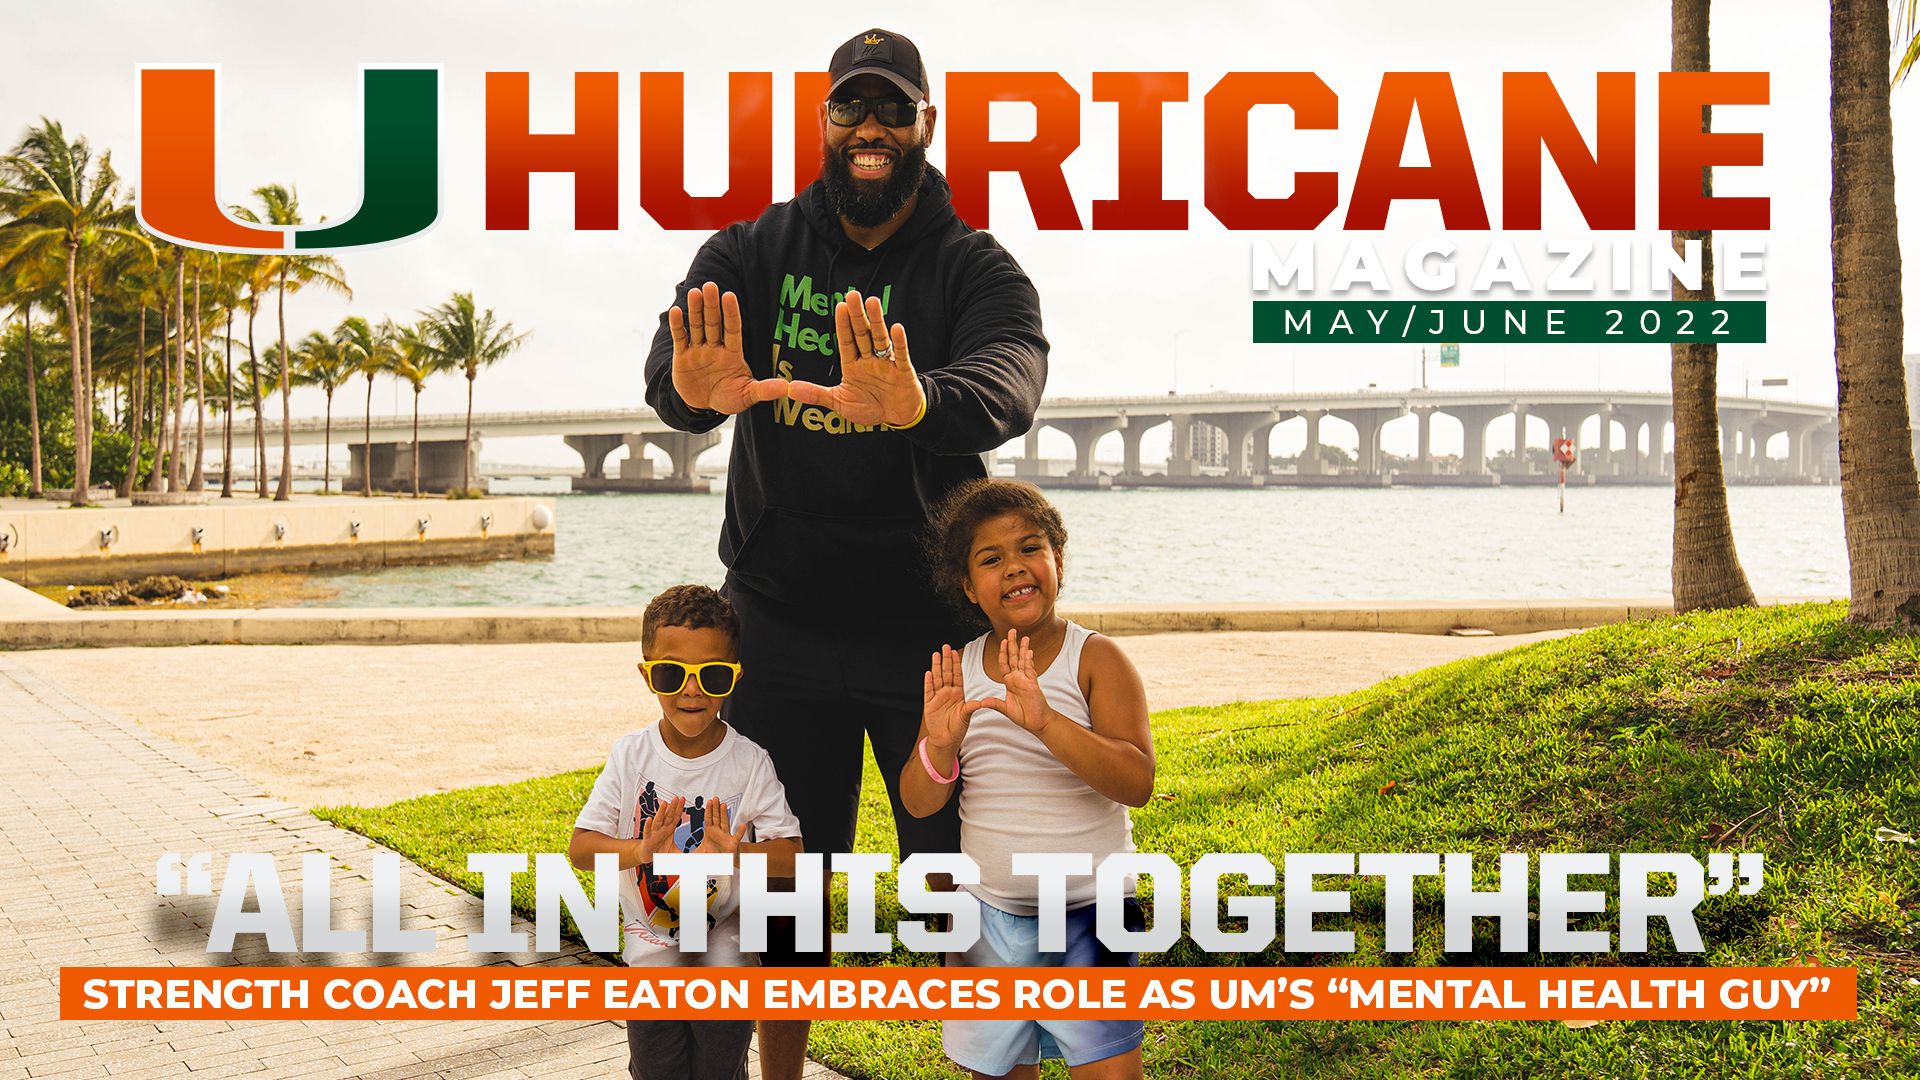 Hurricane Magazine: May/June 2022